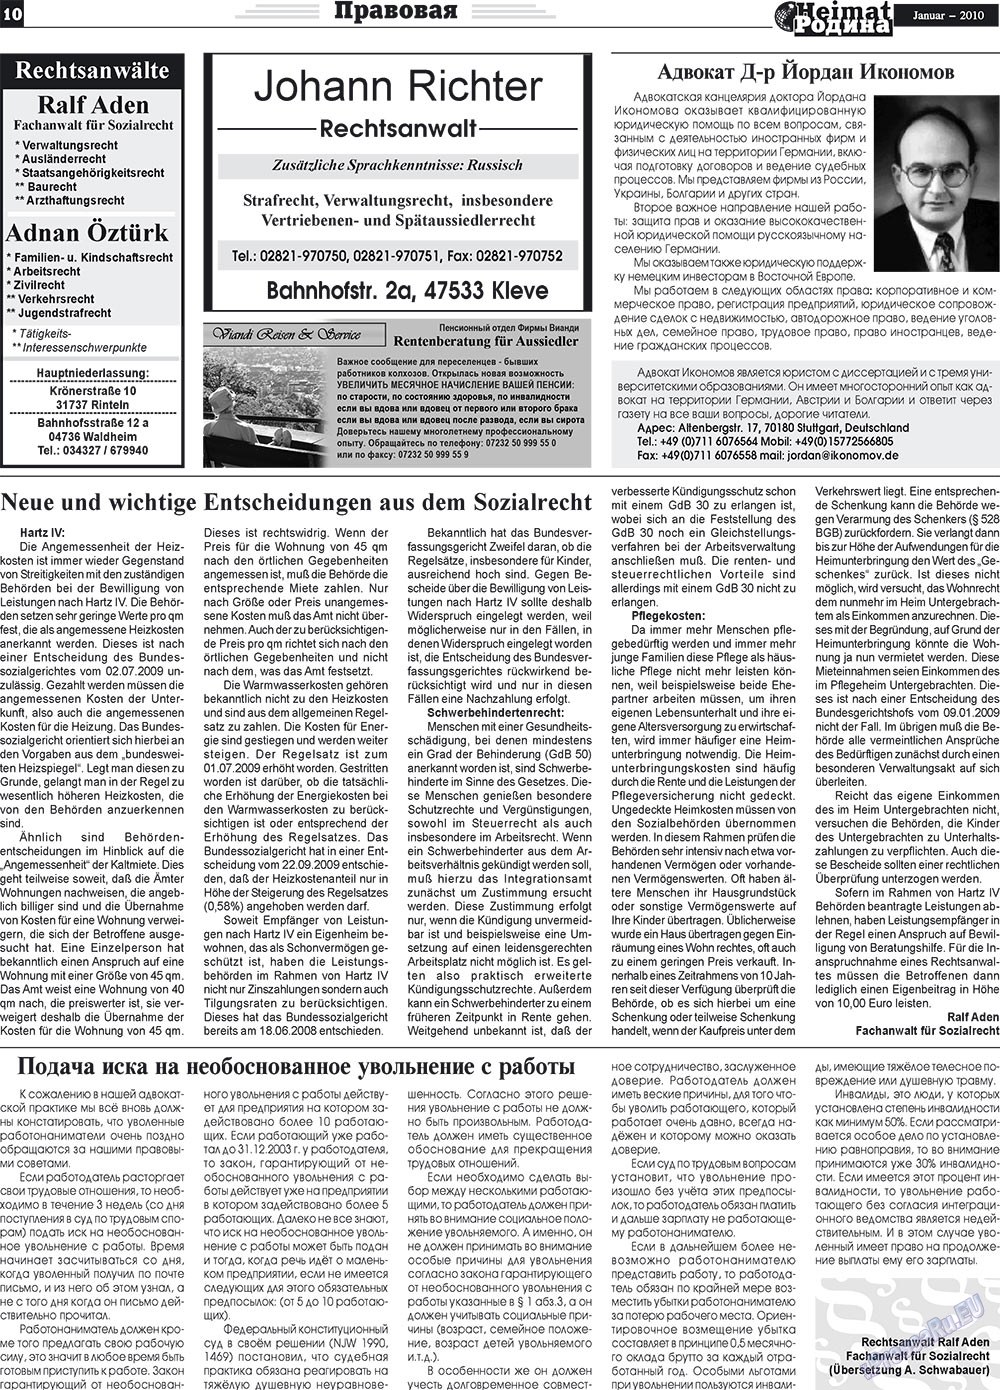 Heimat-Родина (газета). 2010 год, номер 1, стр. 10